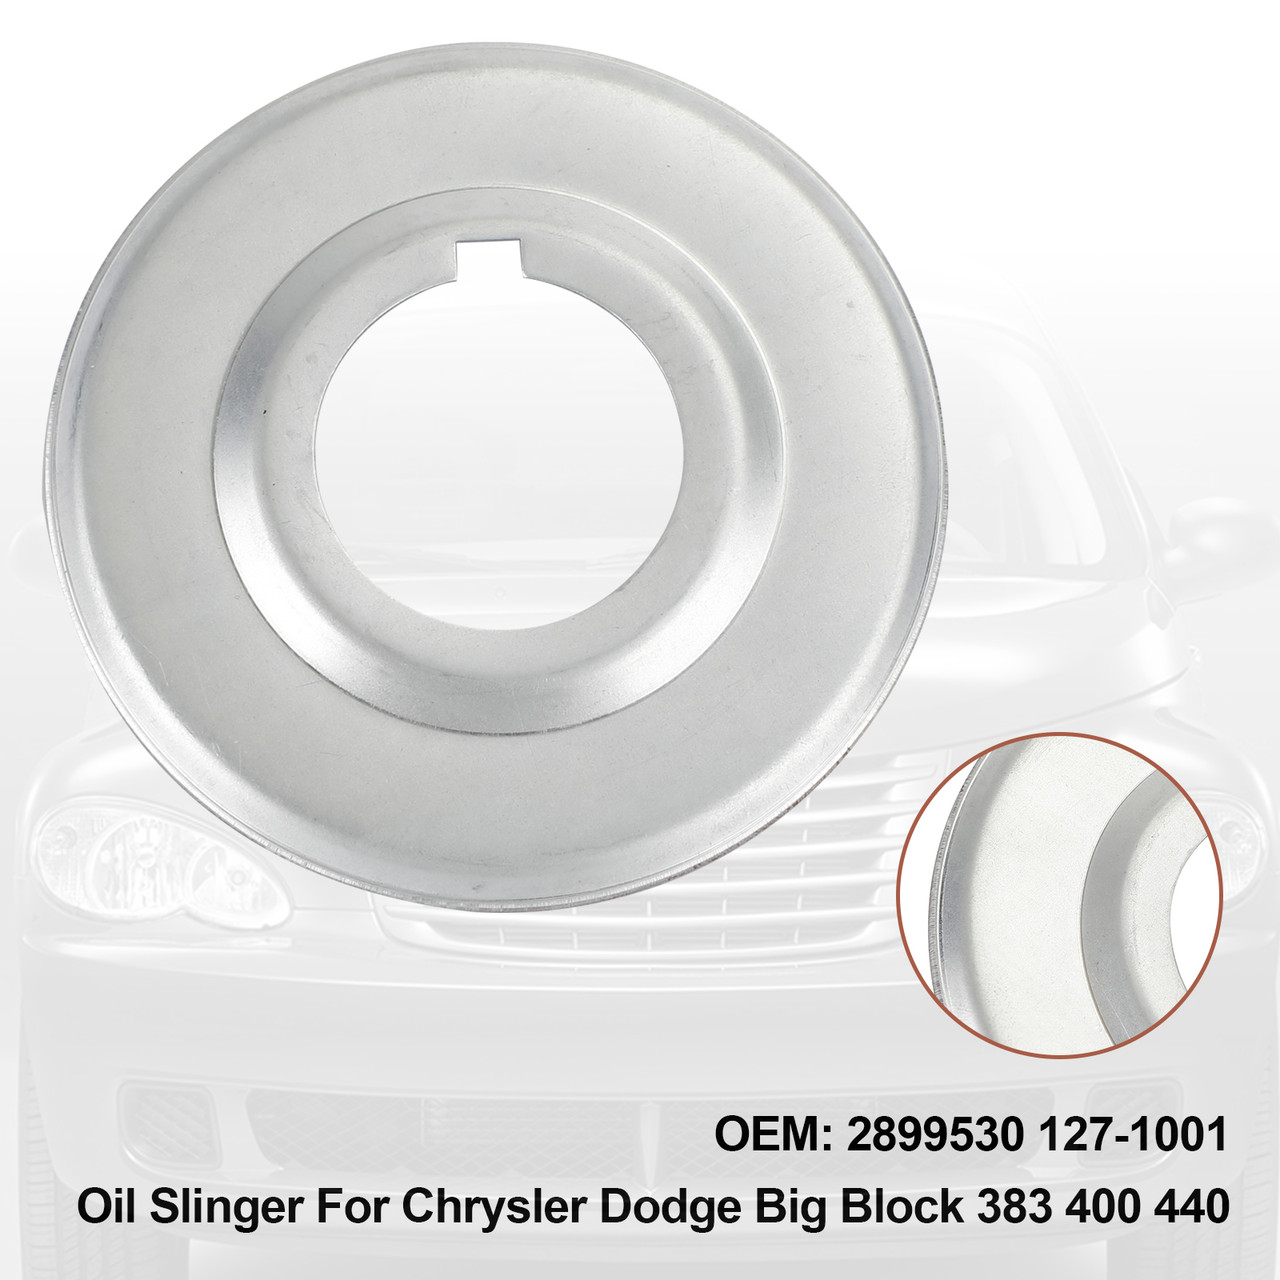 Oil Slinger For Chrysler Dodge Big Block 383 400 440 2899530 127-1001